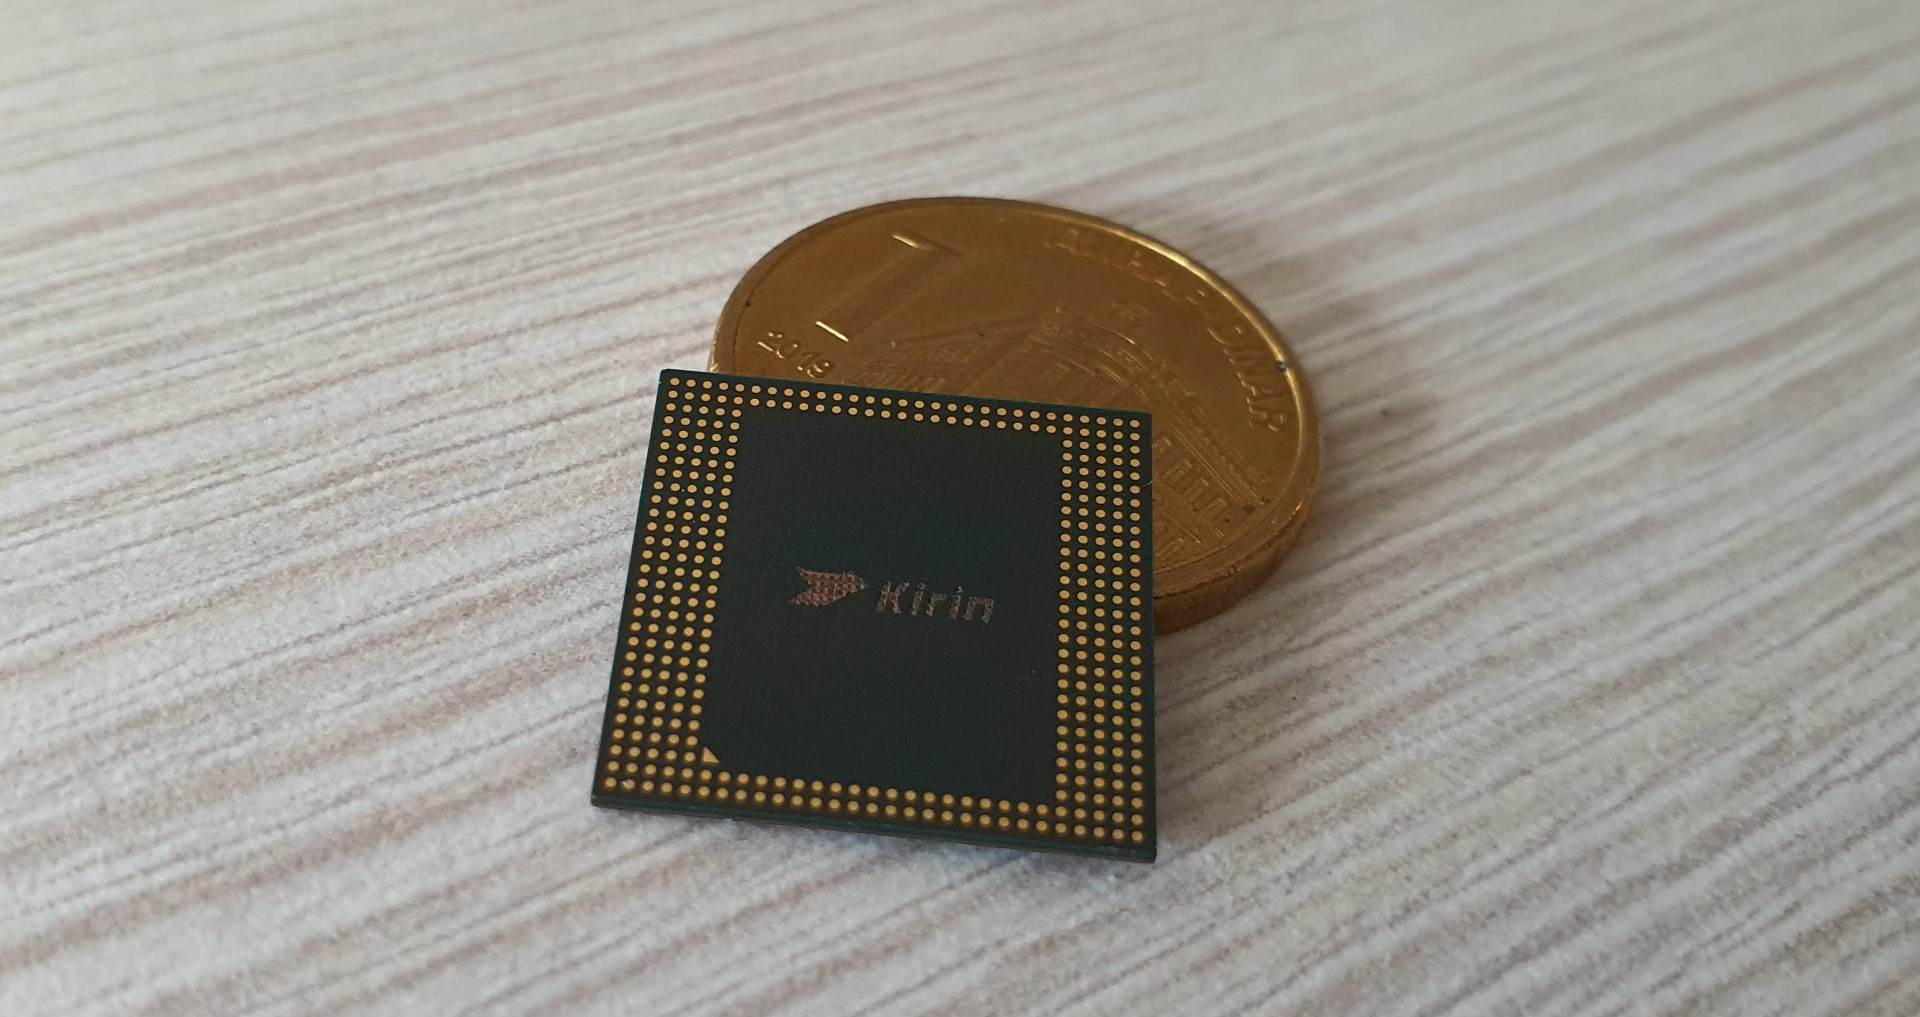  Huawei HiSilicon Kirin čip 